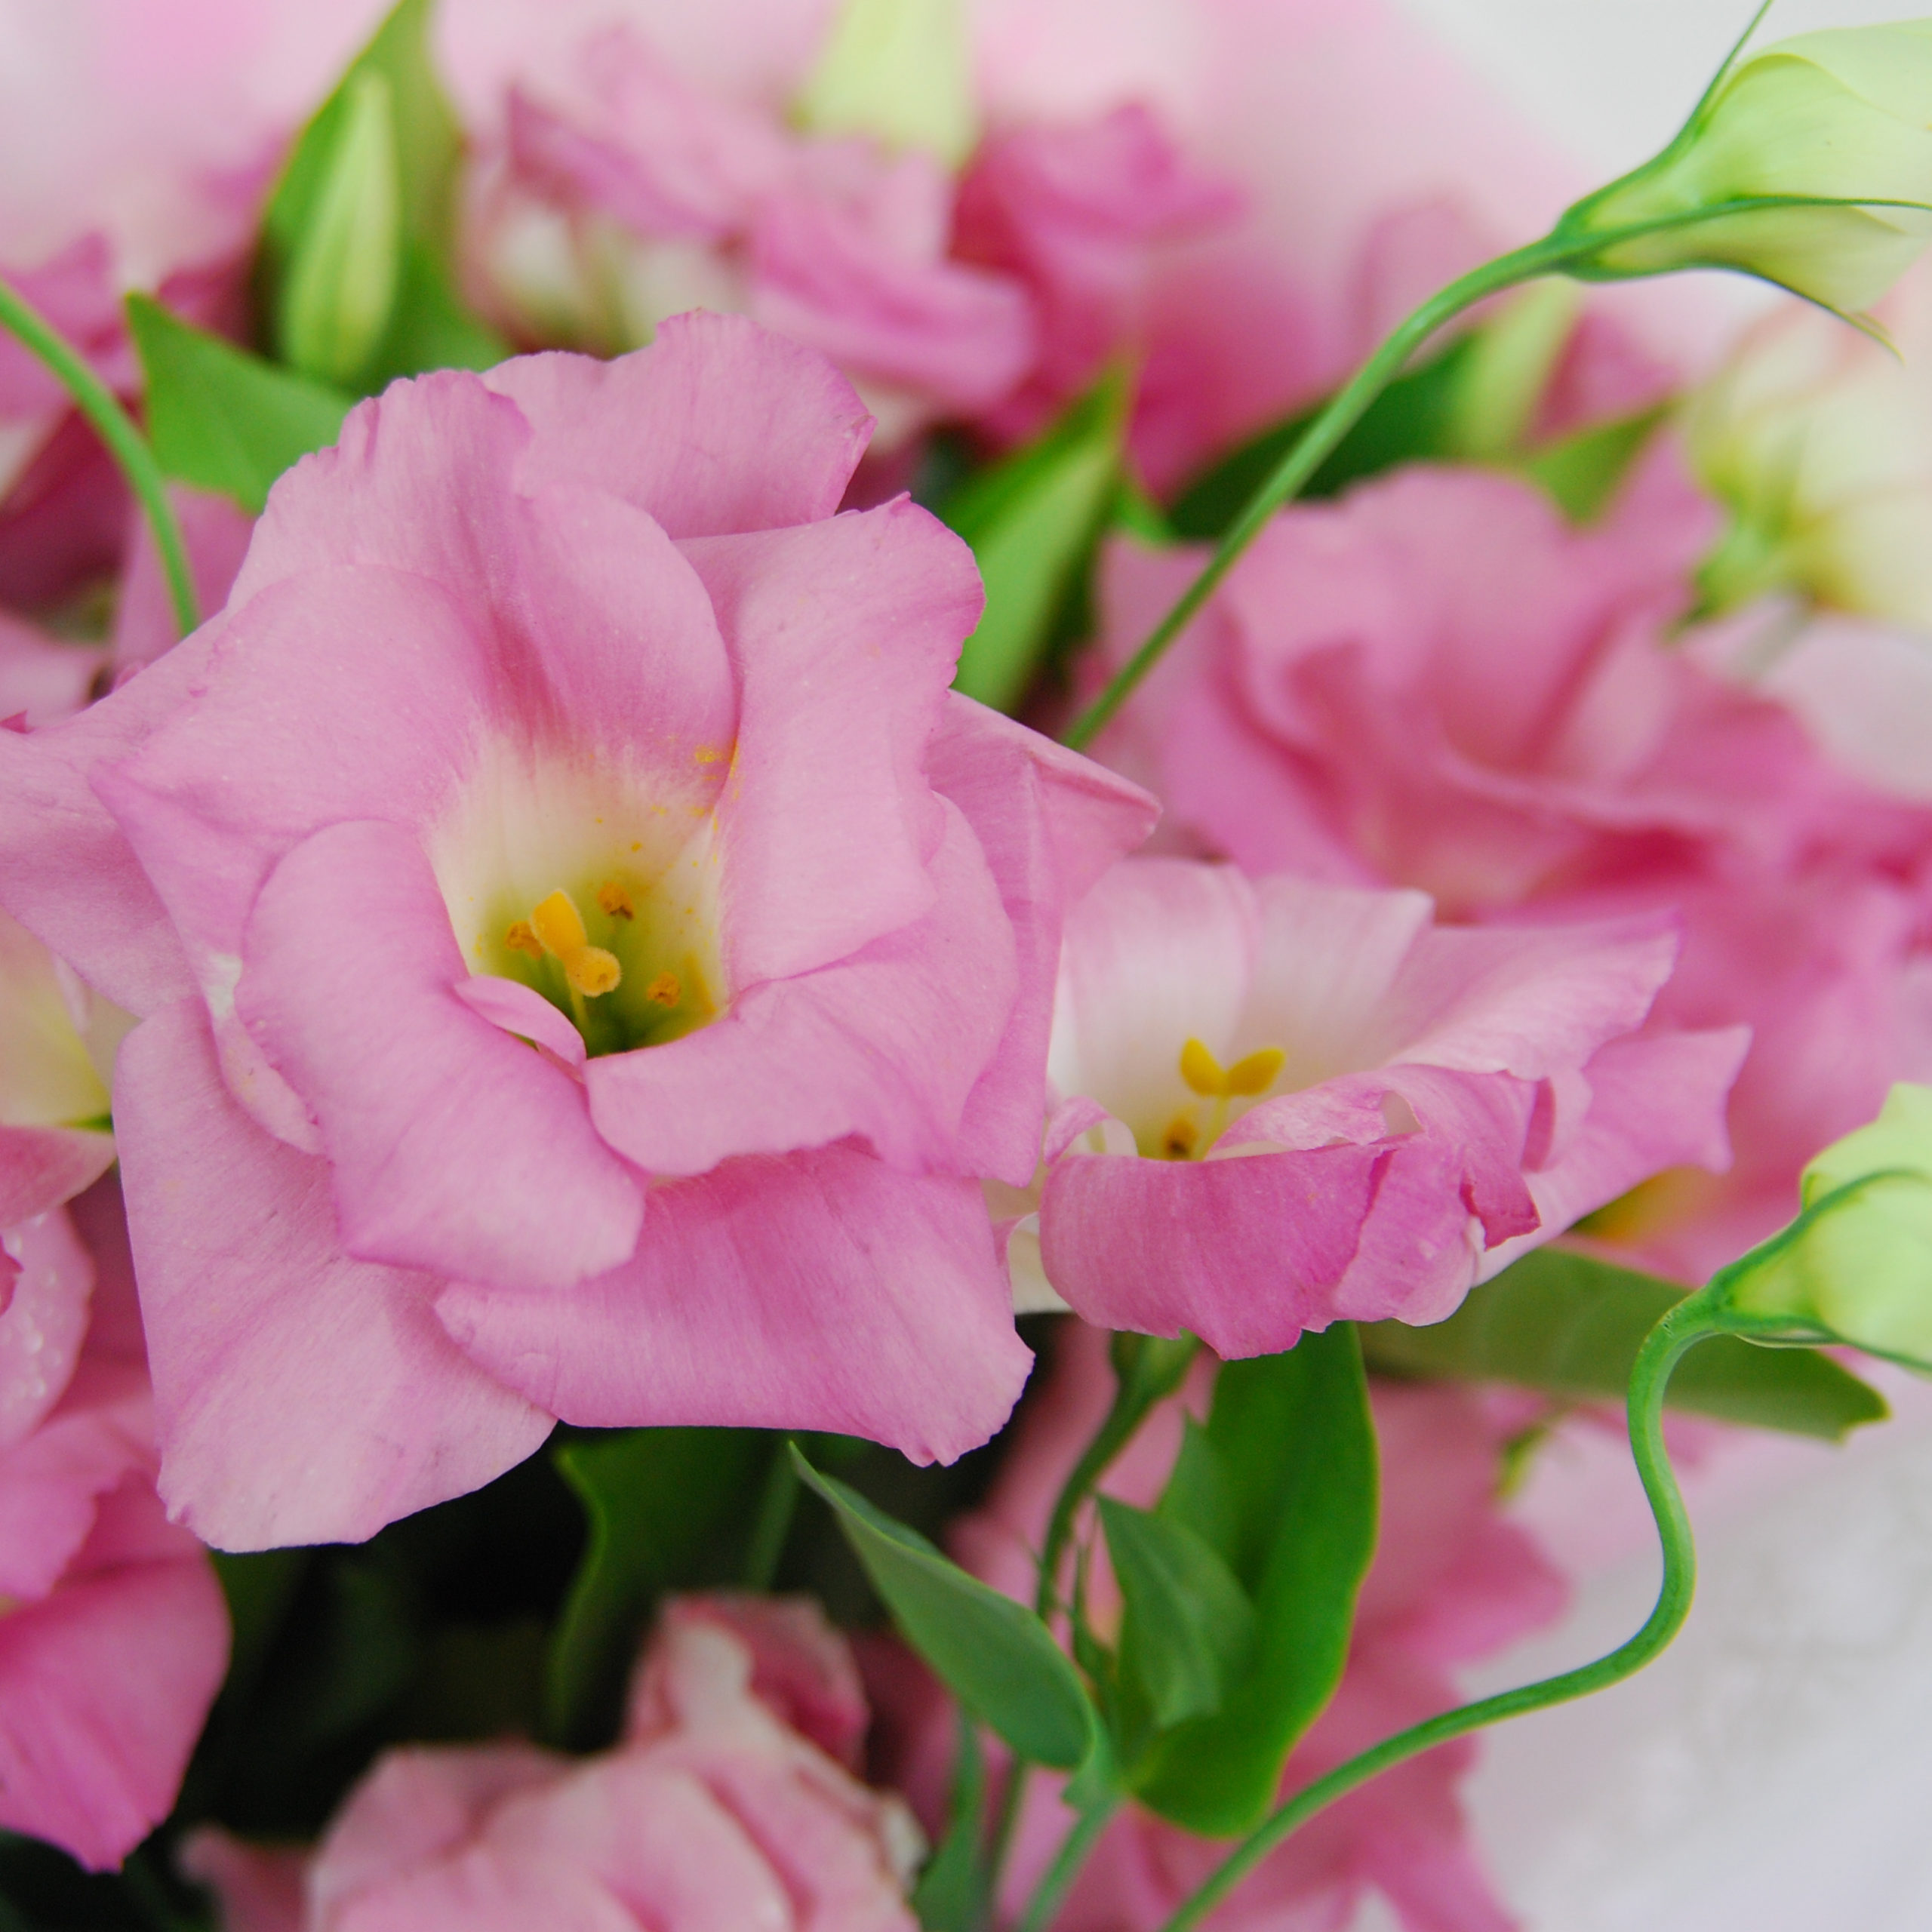 【巧繪網-FJ520134粉色花漾】=新鮮粉桔梗花束‧粉嫩熱賣中=網路花店/傳情花束/禮物